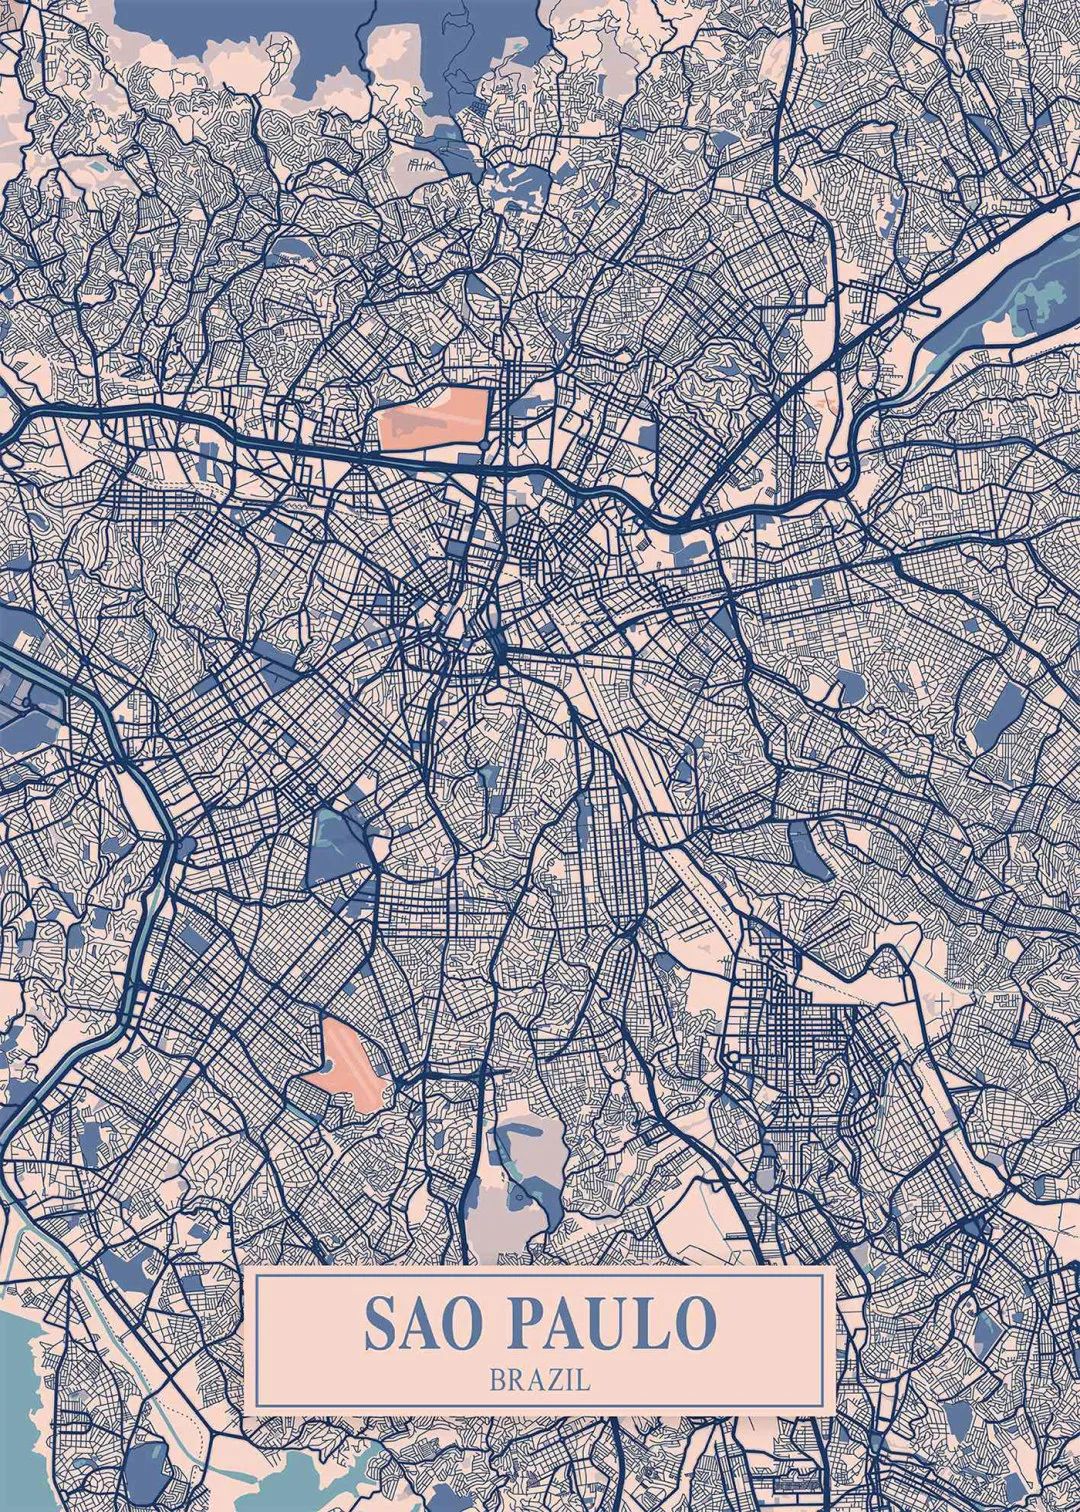 圣保罗的路网构成了城市的血脉，这也是一个城市的基因特征，虽然看起来很乱。是不是真有点“半格子”的意思？